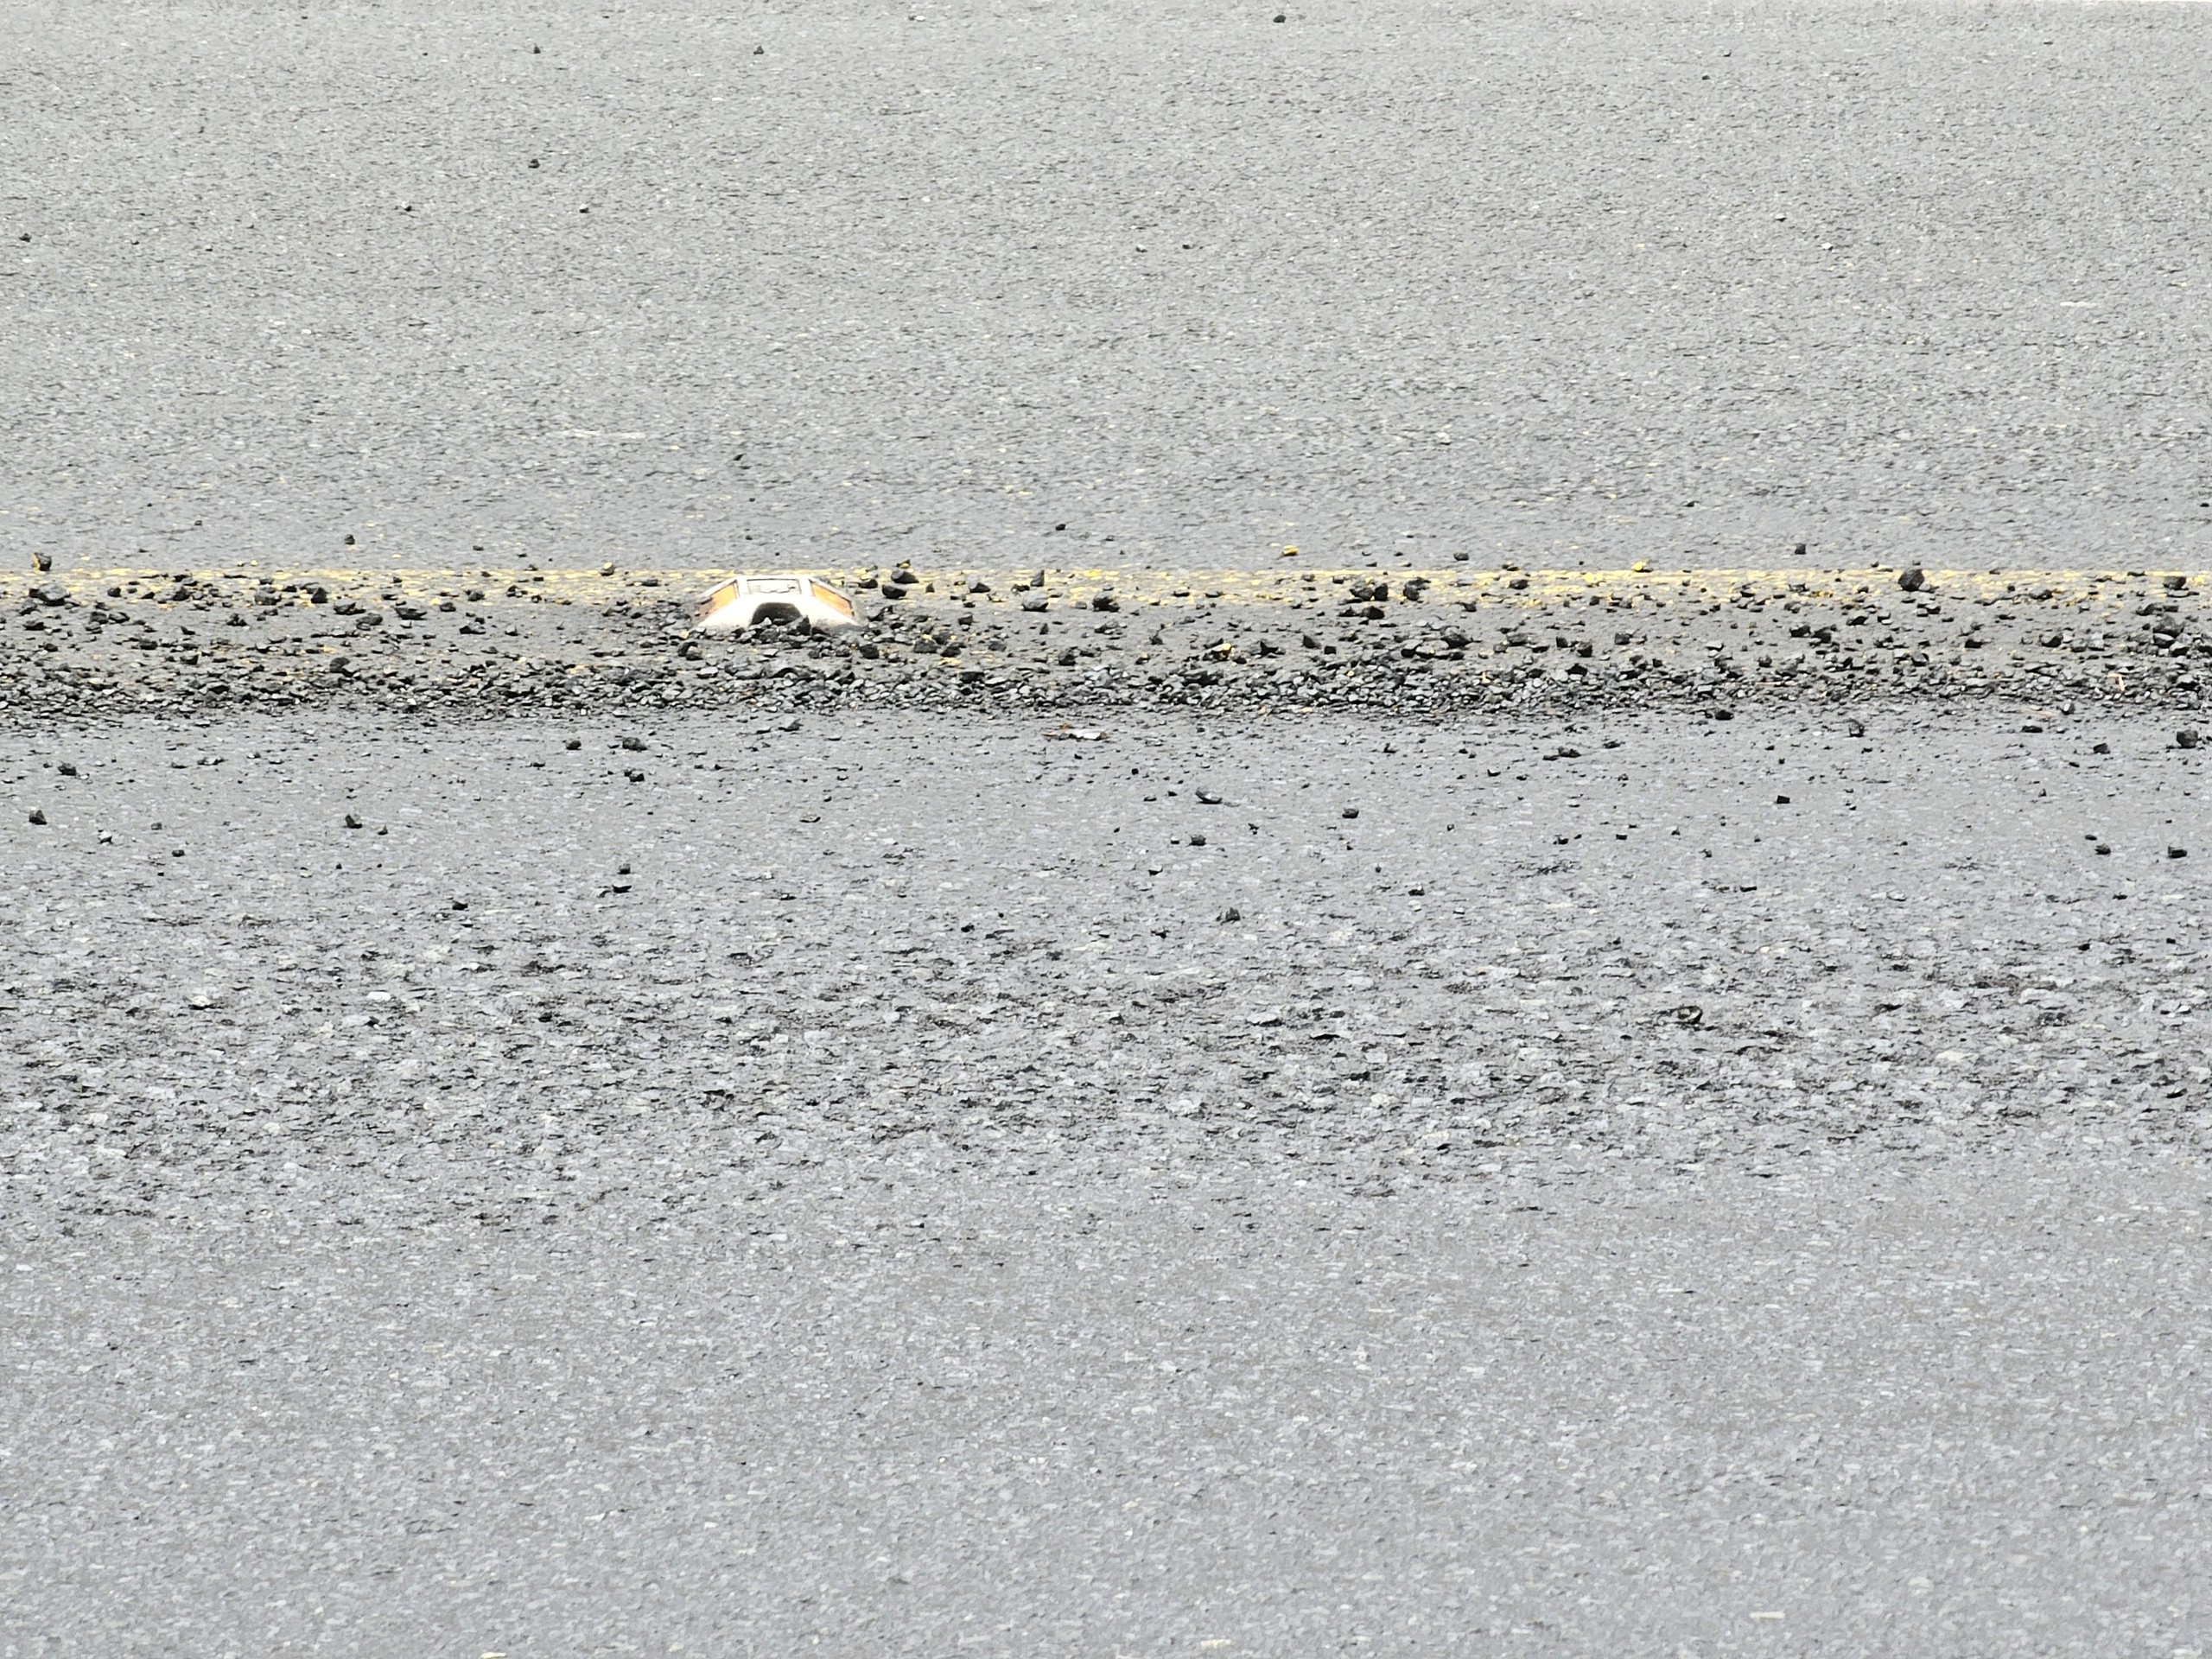 Đèo Prenn tại Đà Lạt xuất hiện vệt hóa chất lạ gây bong tróc mặt đường- Ảnh 3.